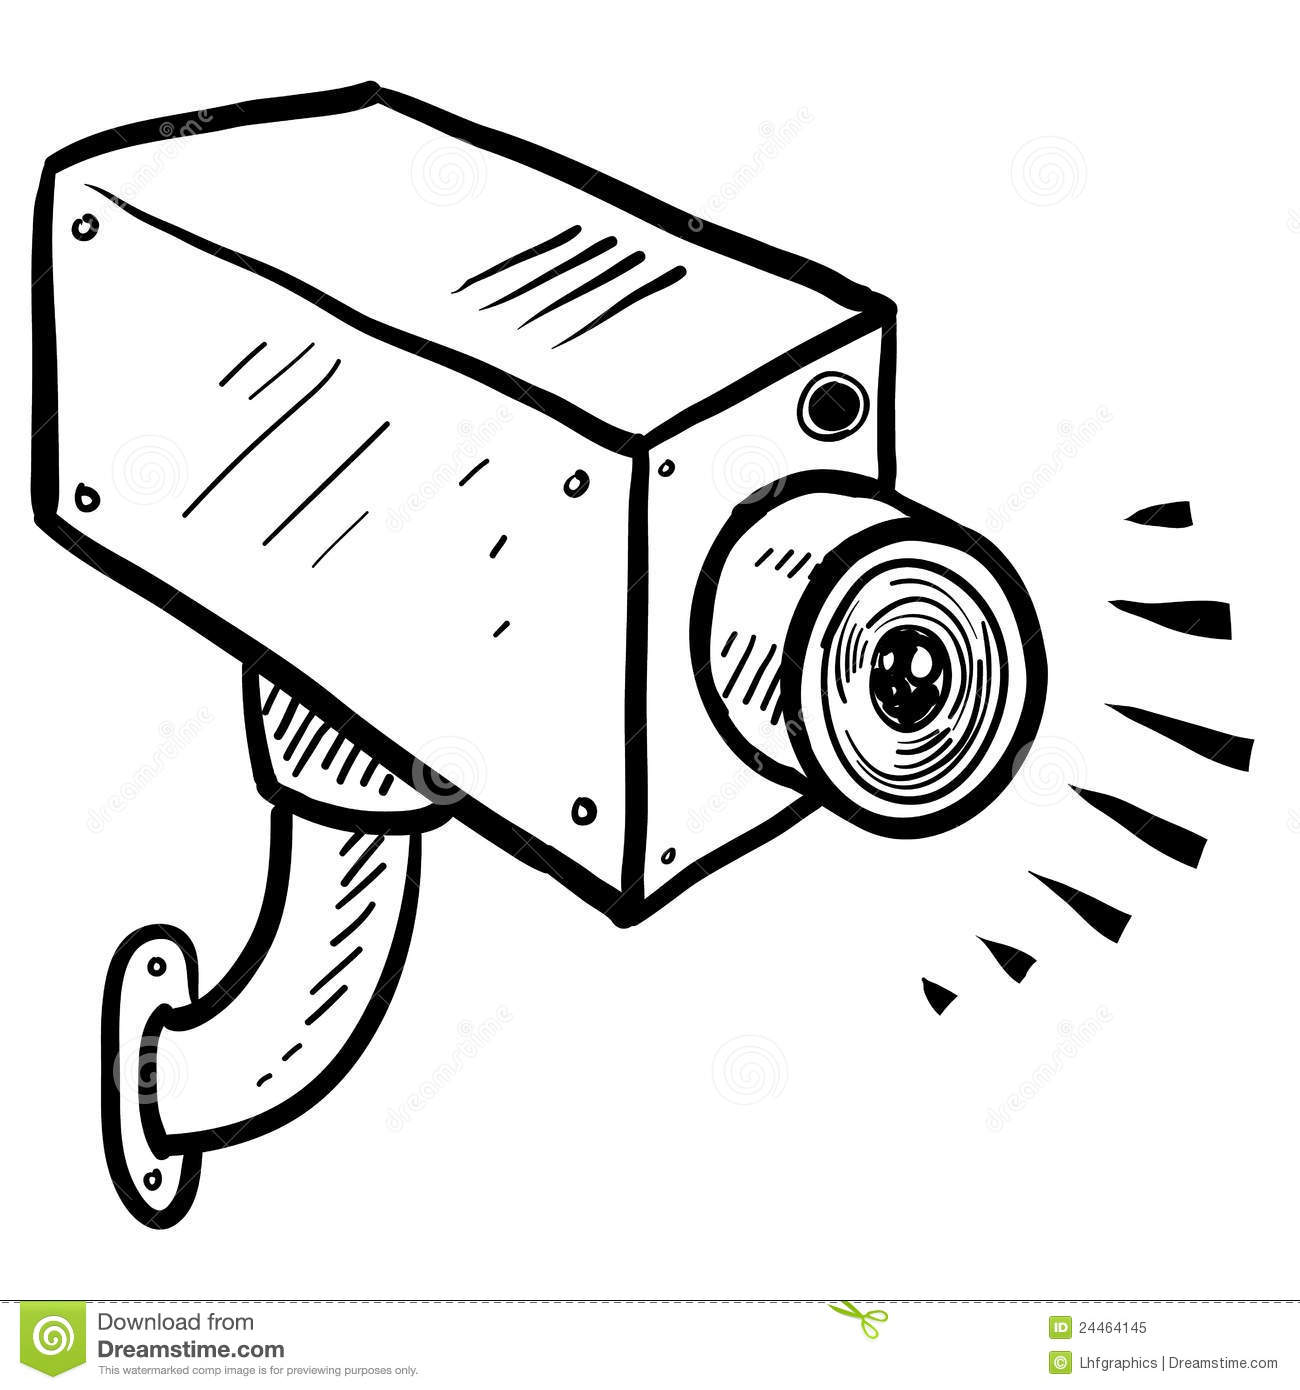 CCTV security camera sketch .